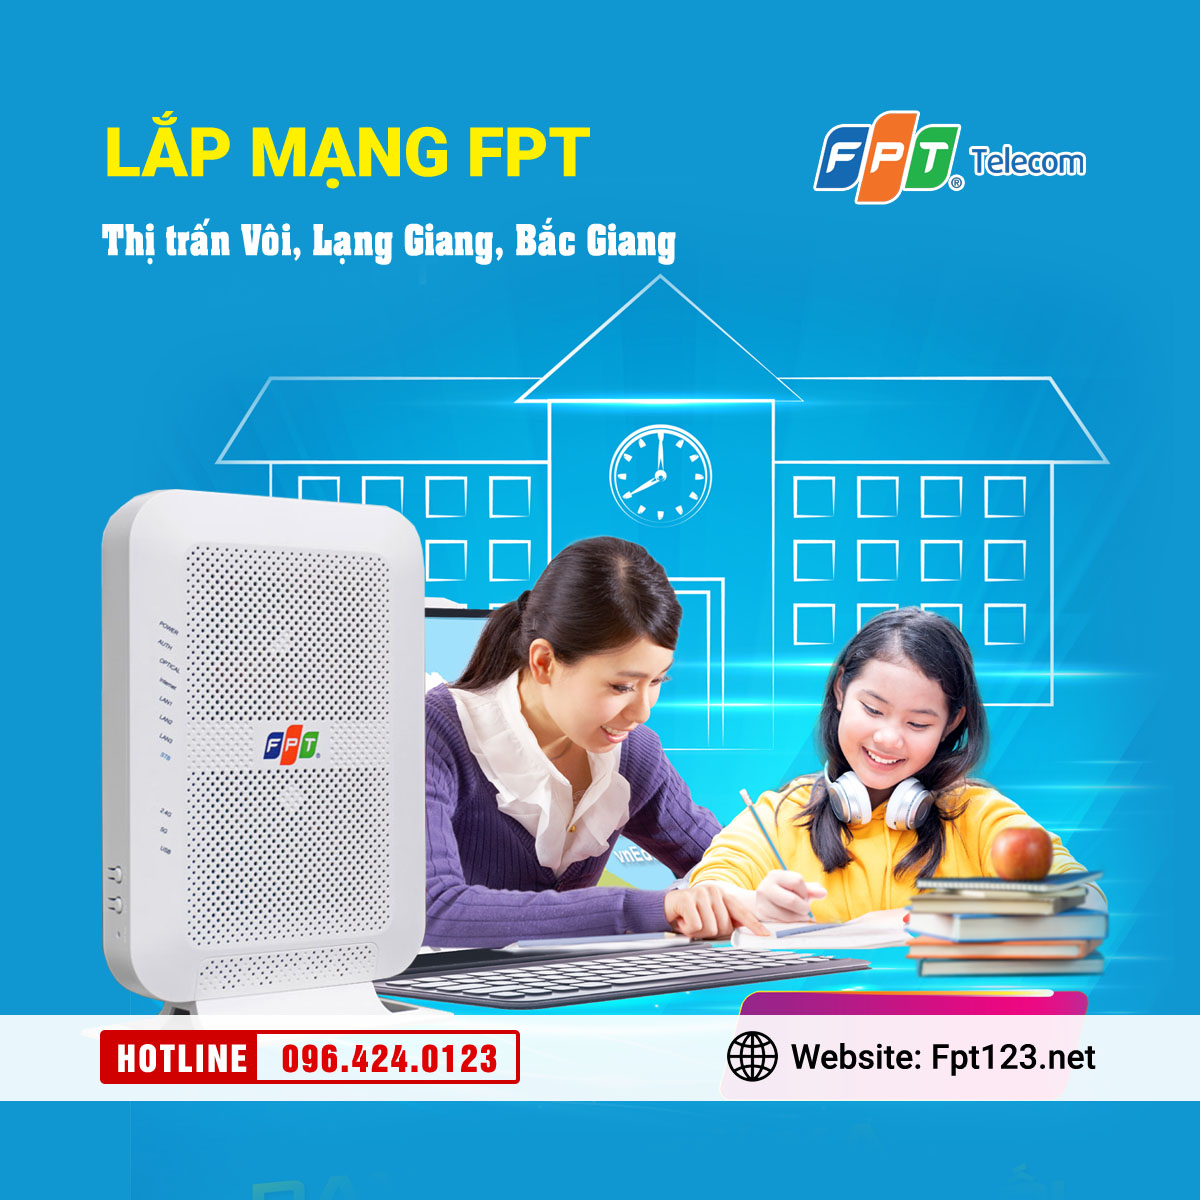 Lắp mạng FPT ở thị trấn Vôi, Lạng Giang, Bắc Giang